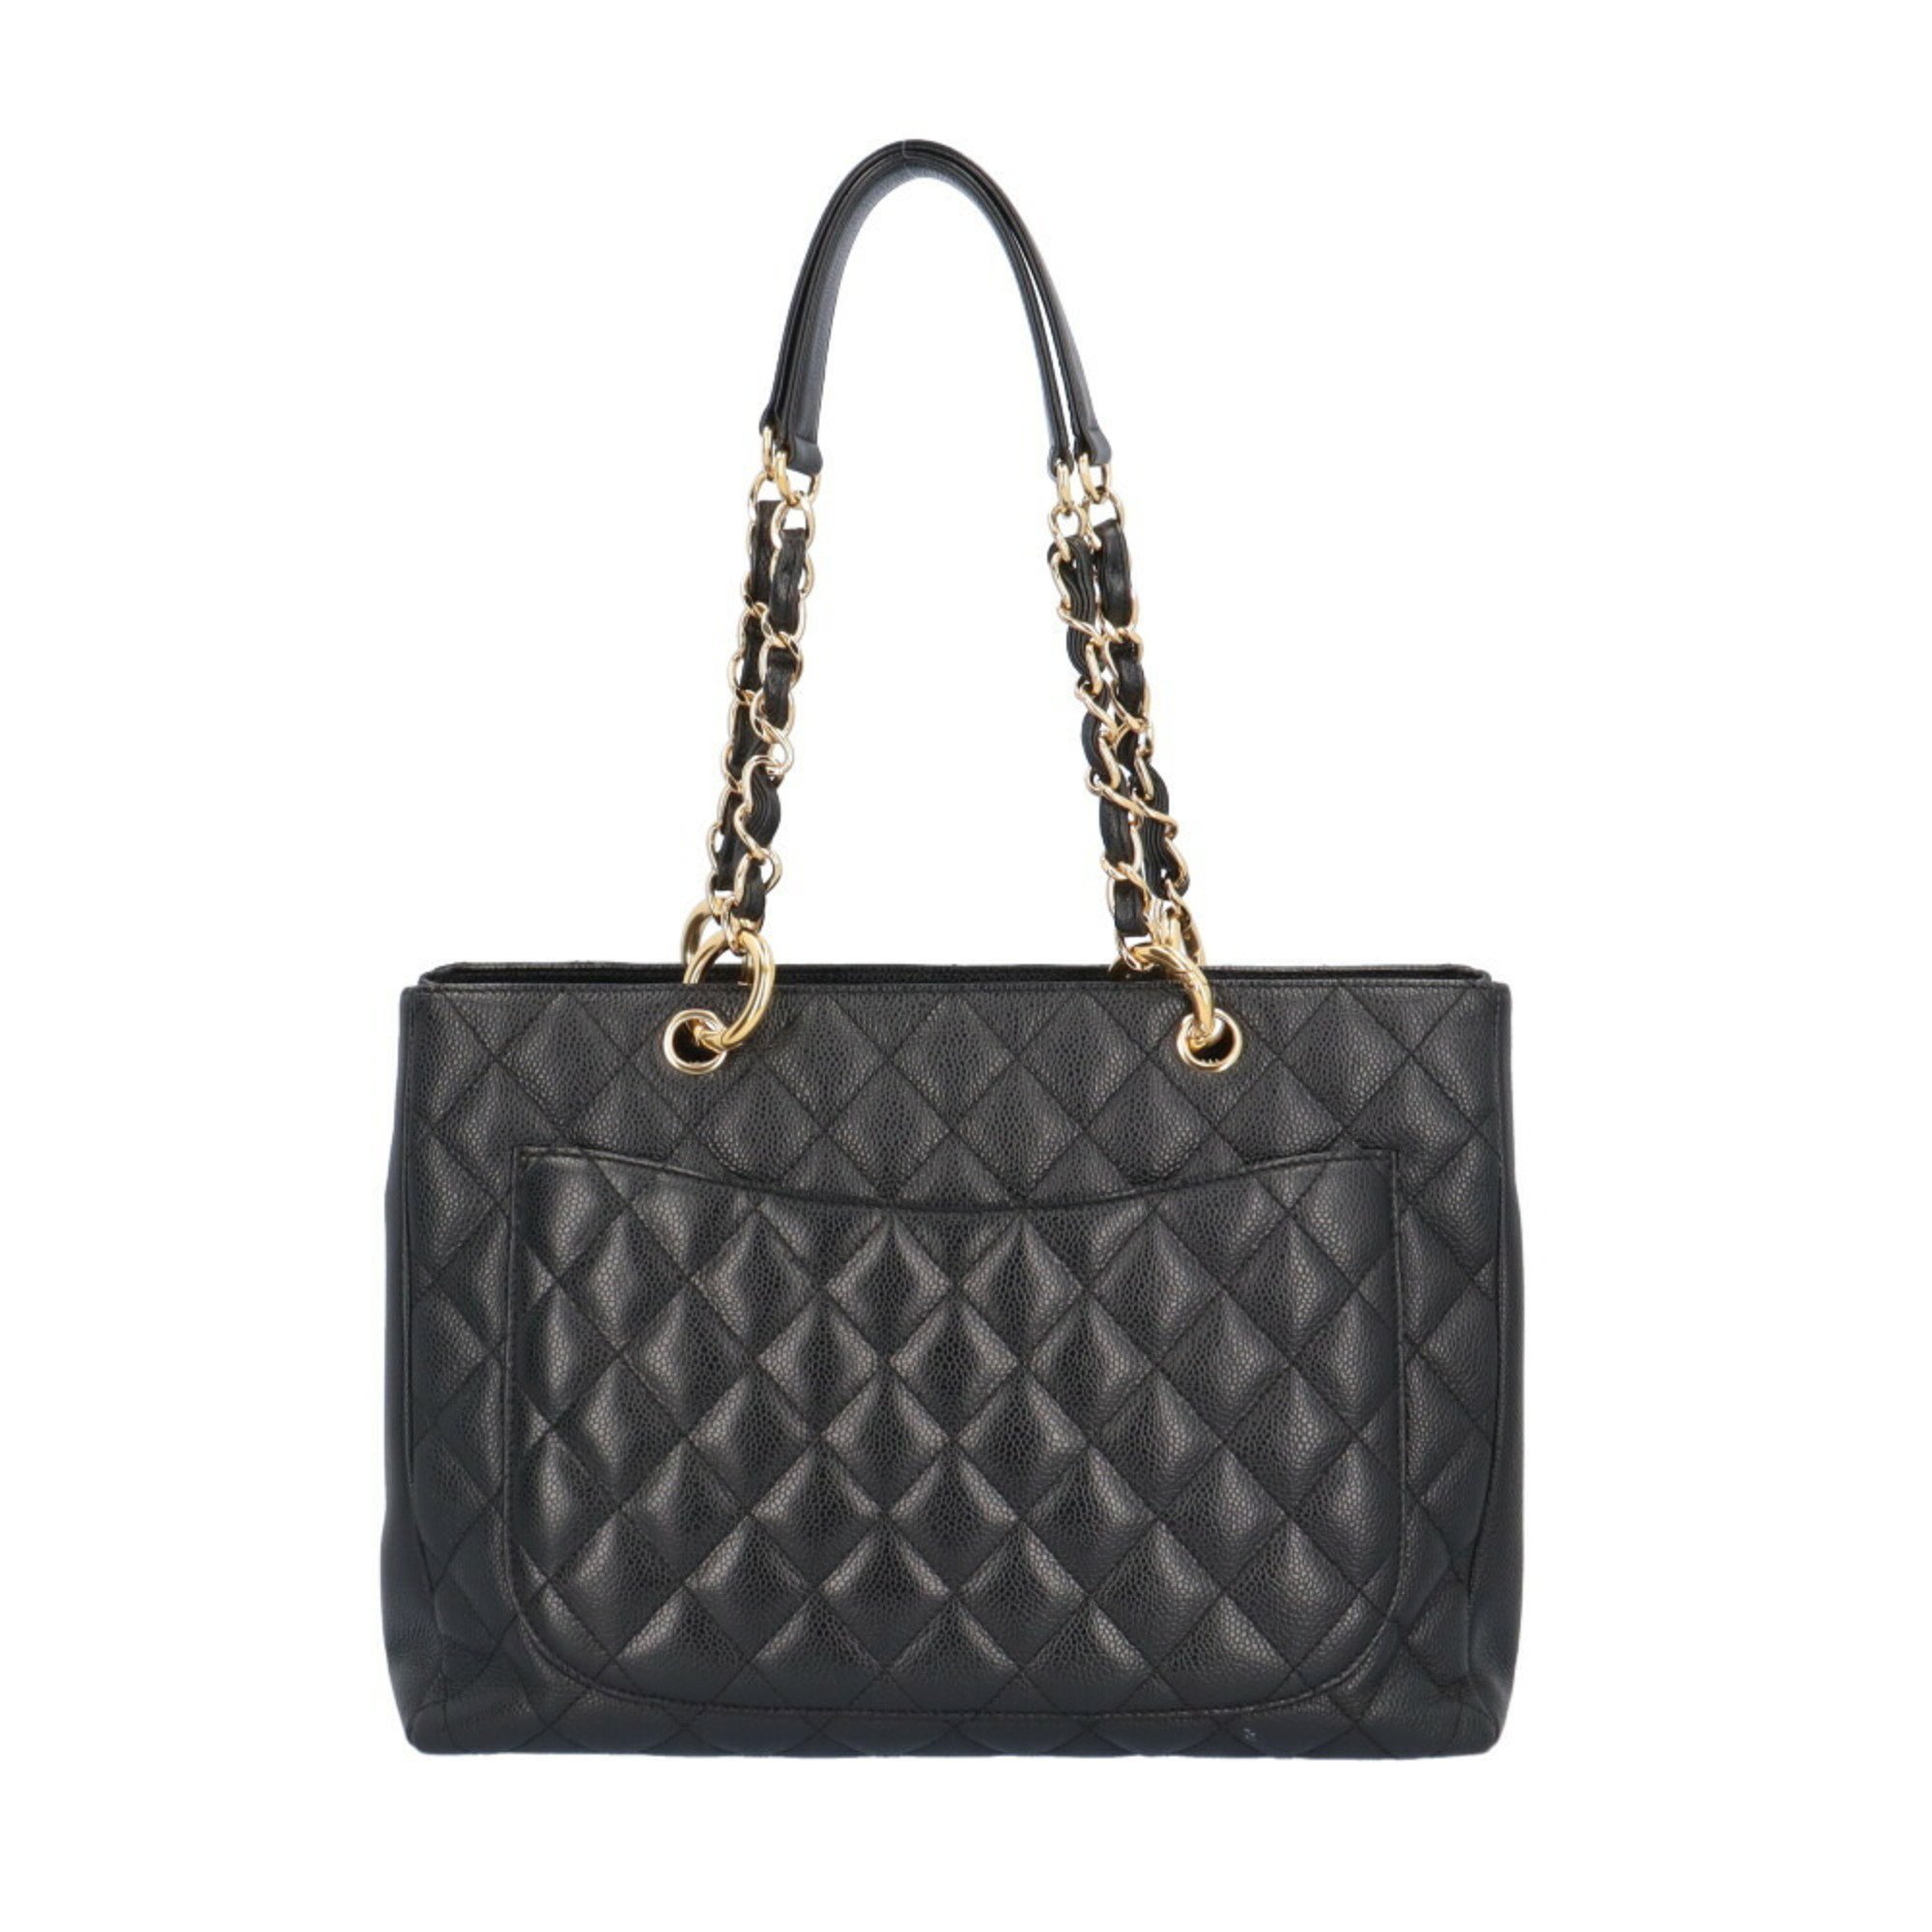 Chanel GST Tote Bag Caviar Skin A50995 Black Women's CHANEL